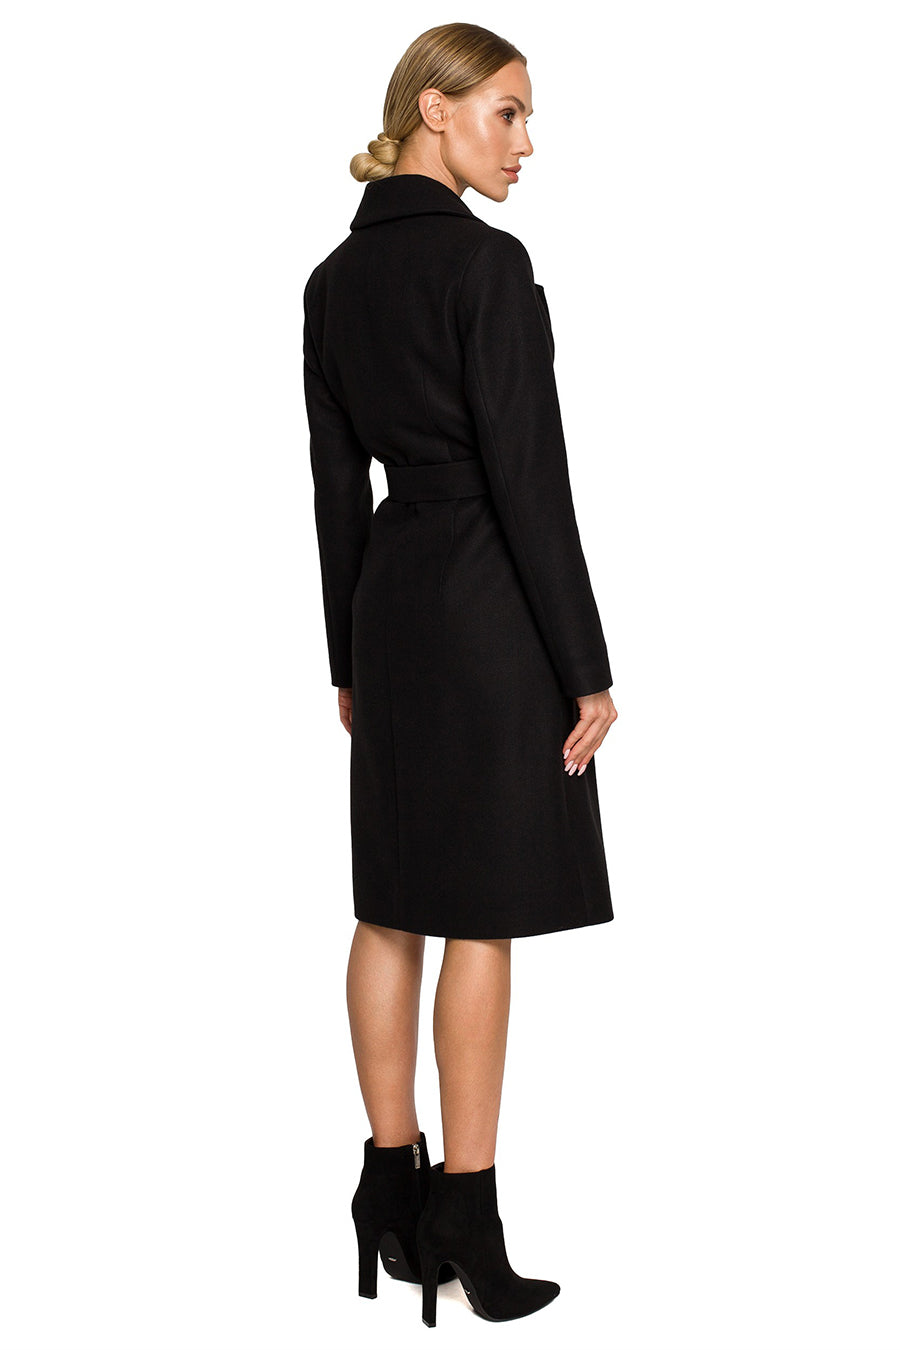 Γυναικείο παλτό Polymnia, Μαύρο 2